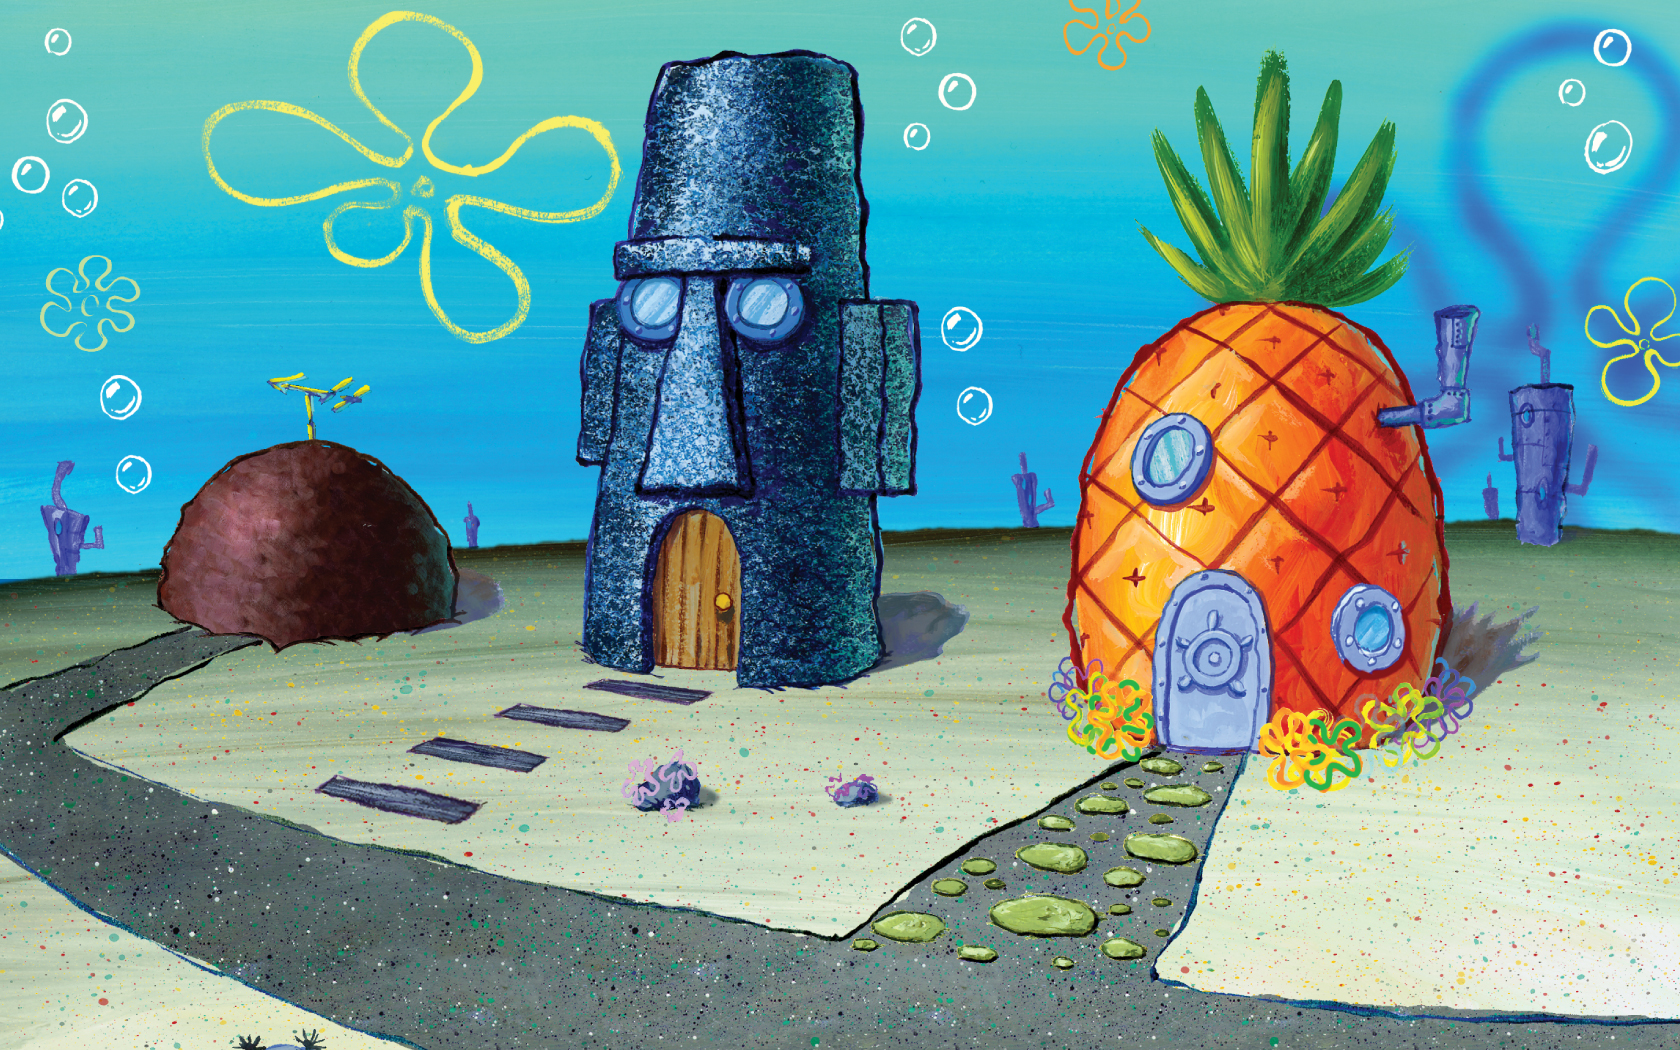  Gambar  Rumah  Patrick Dan Spongebob  Paimin Gambar 